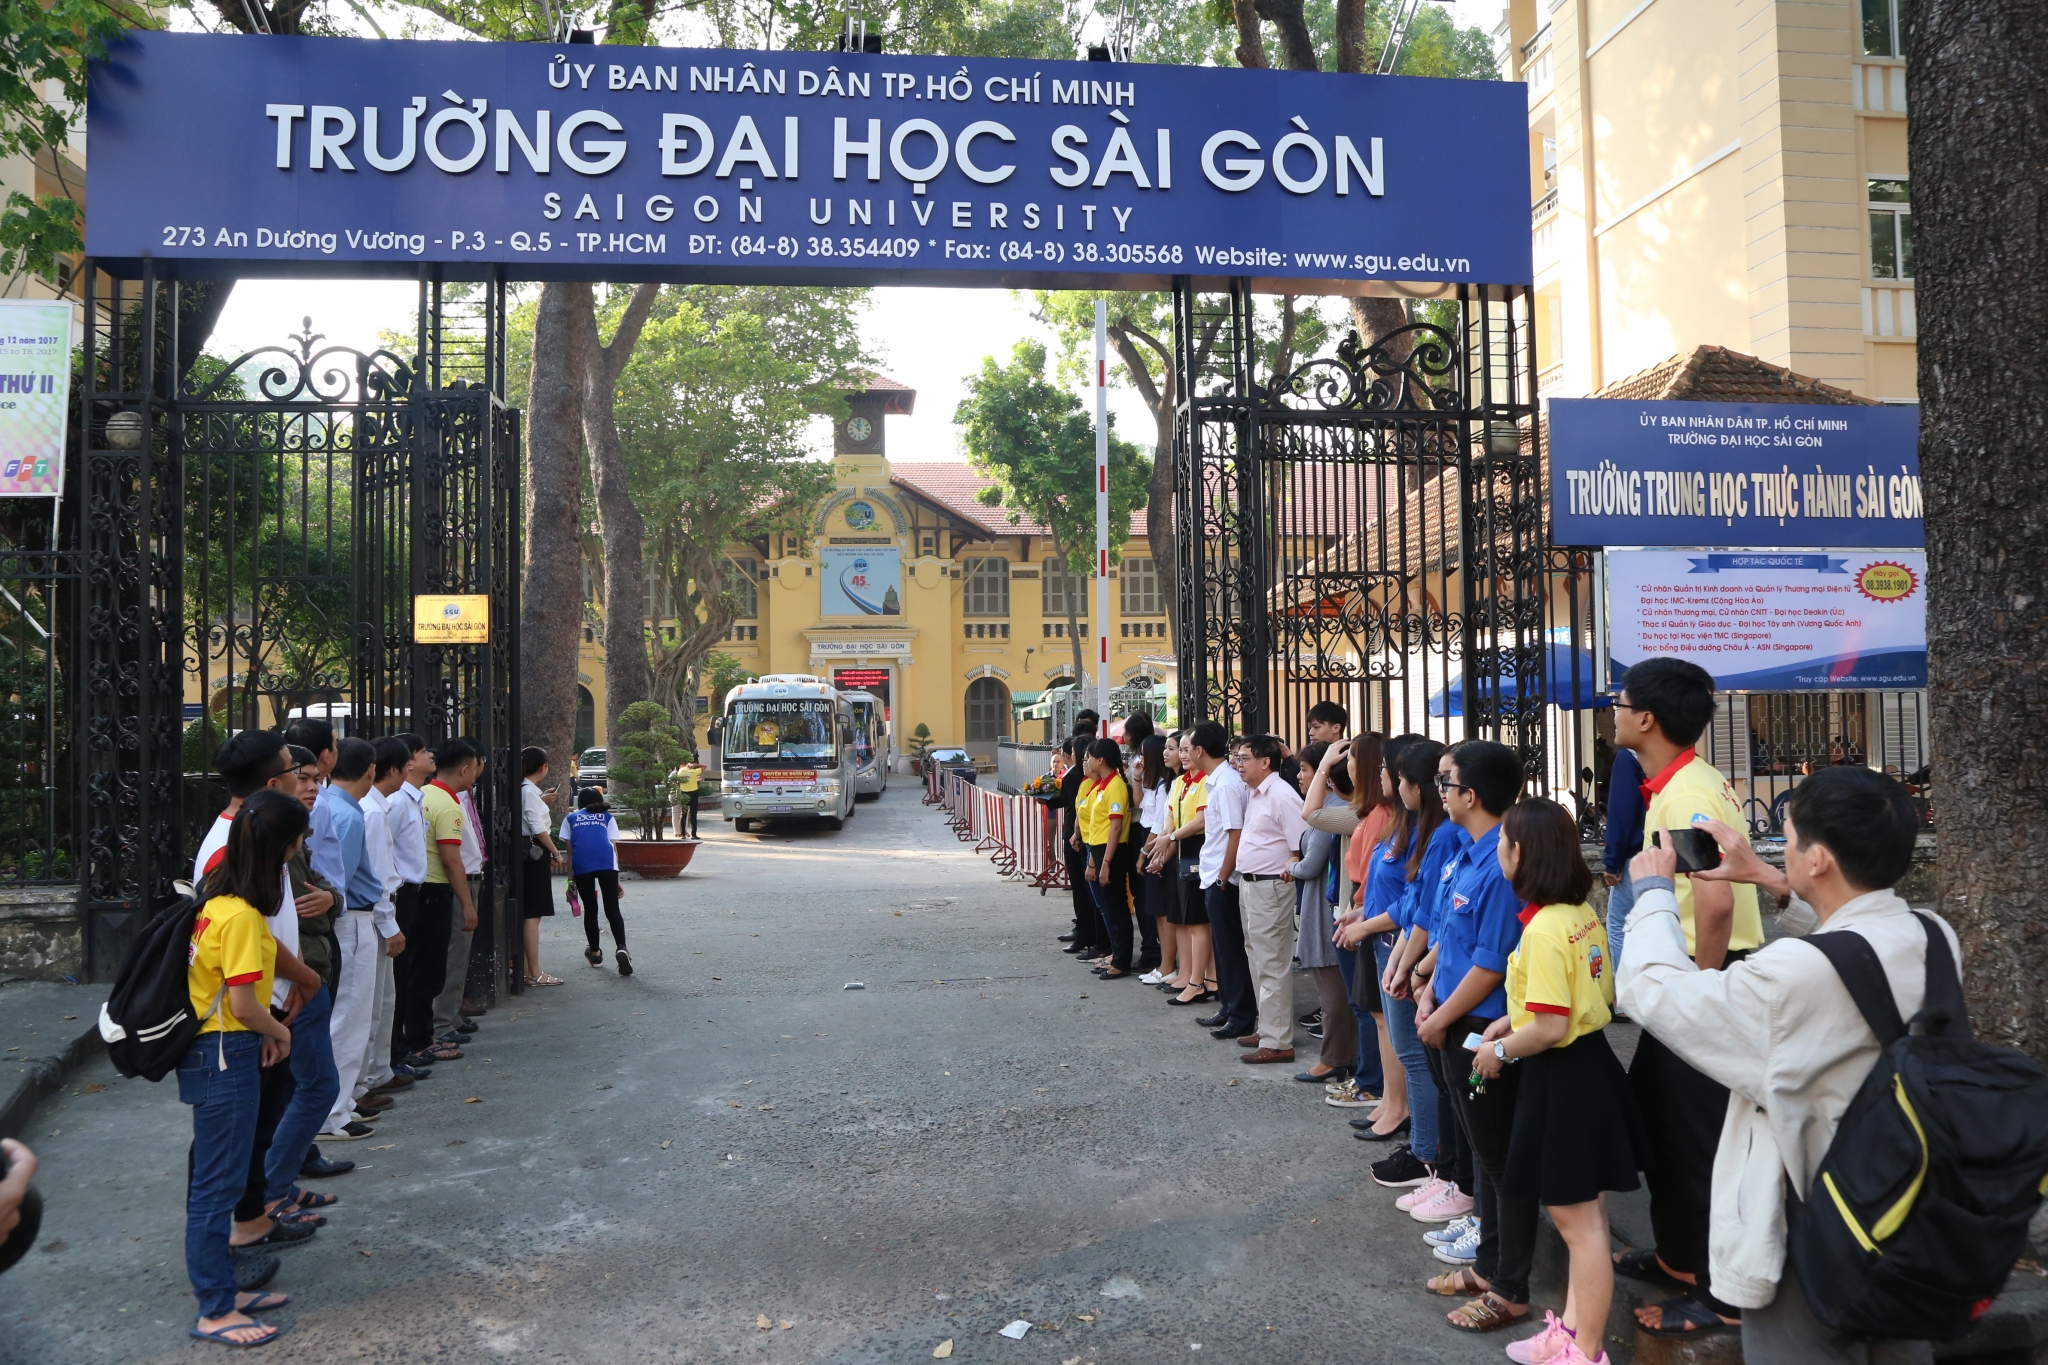 Hệ thống âm thanh thông báo ký túc xá Trường Đại học Sài Gòn